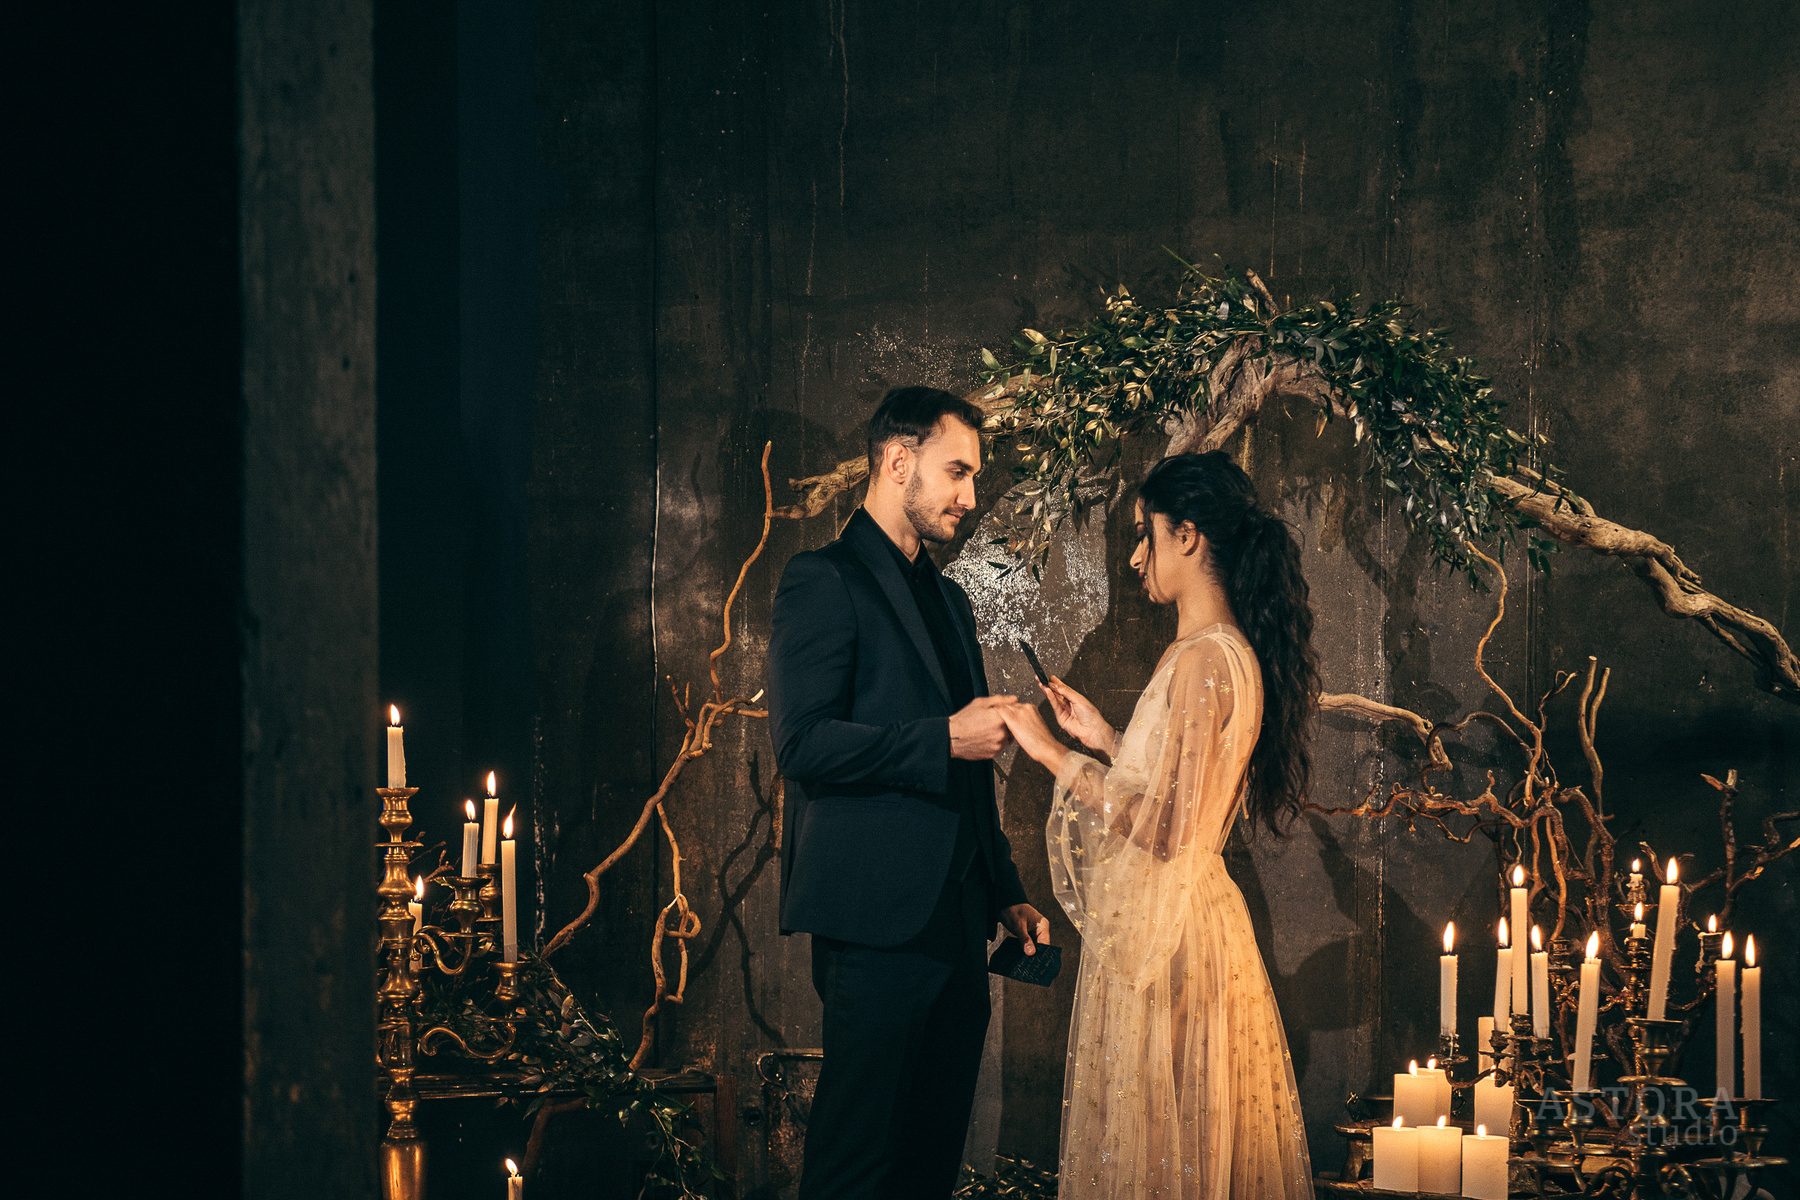 marriage indoor photo by Astora Studio